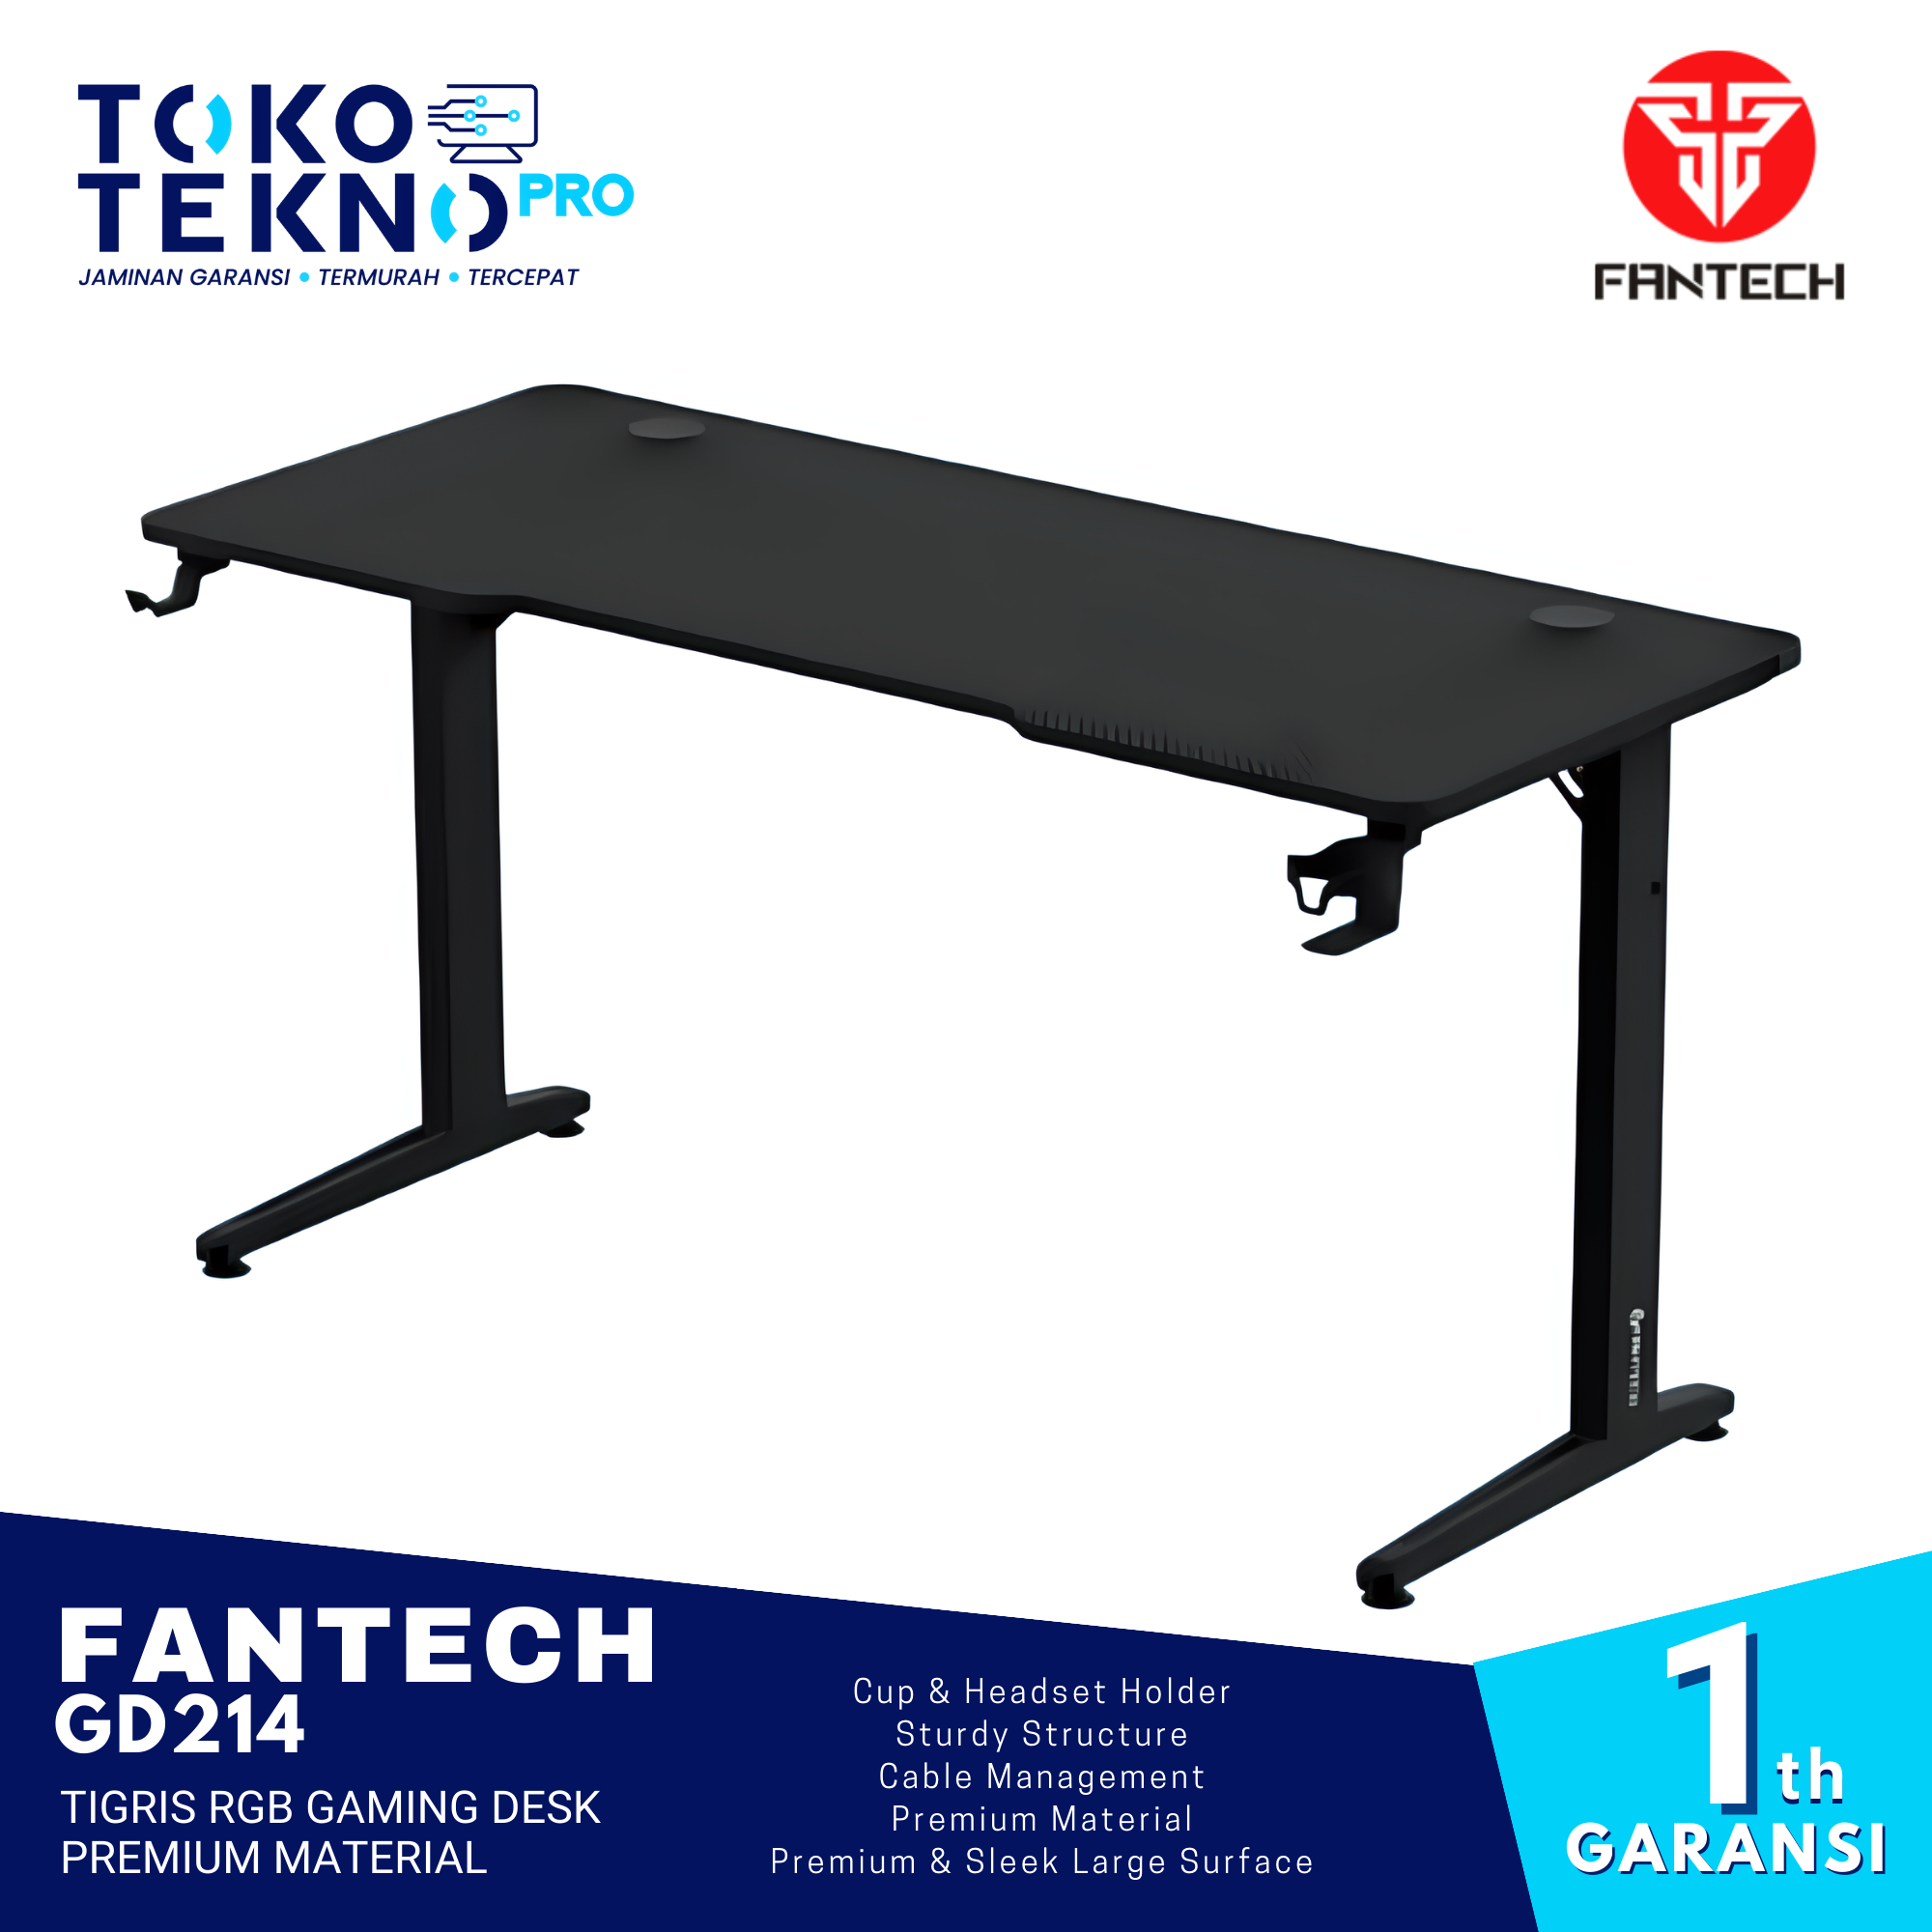 Fantech GD214